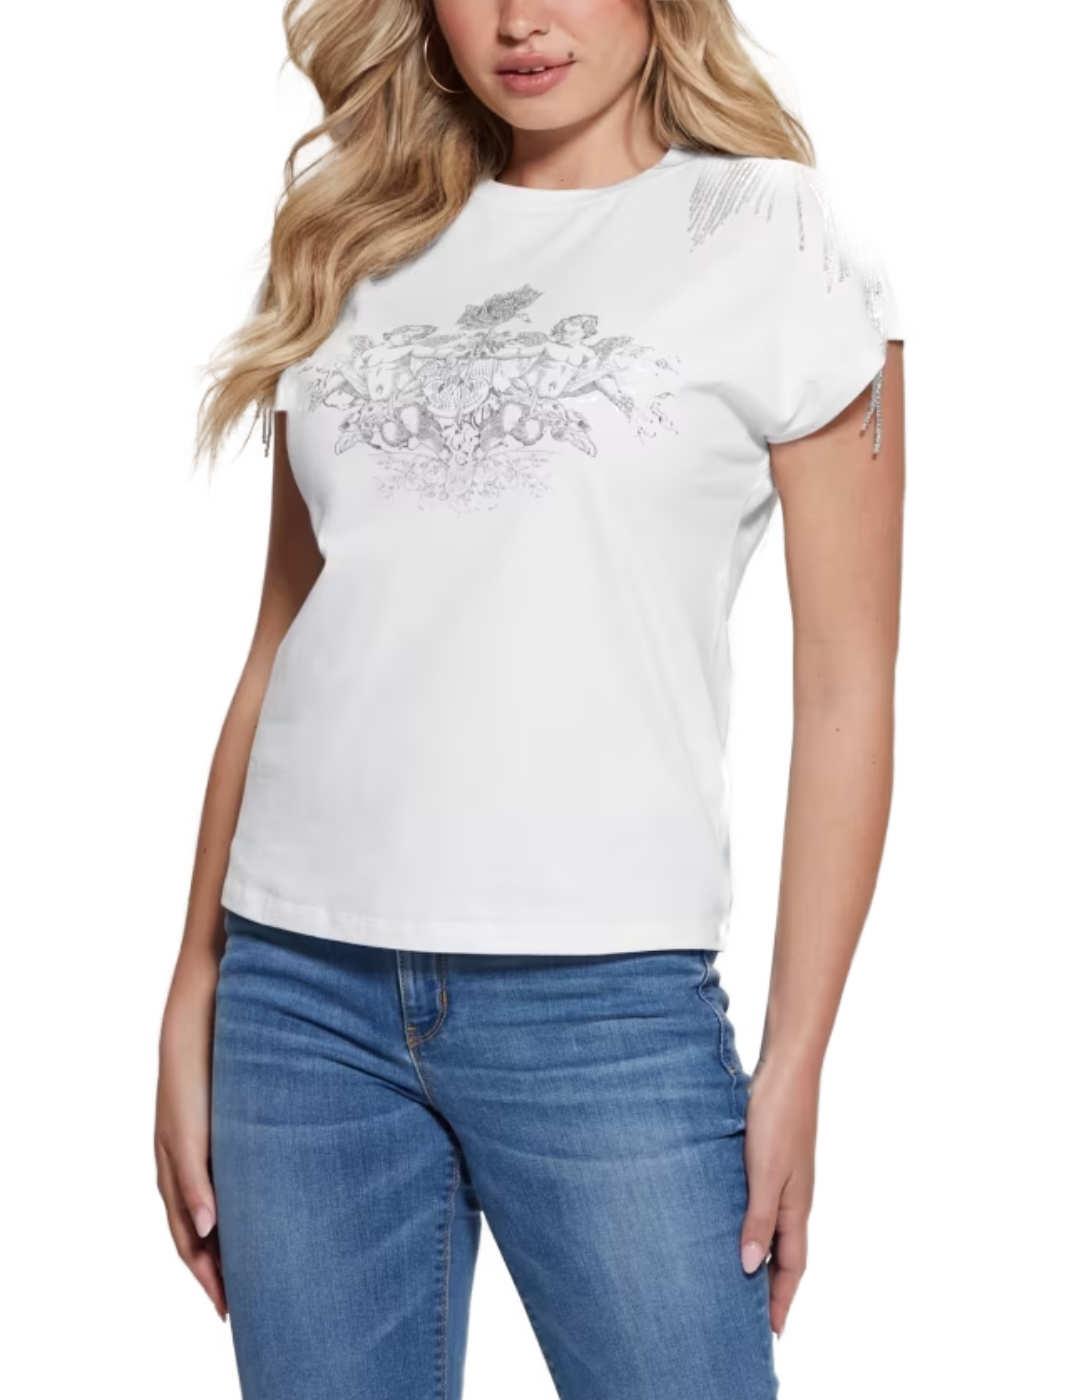 Camiseta Guess Royal blanco manga sisa para mujer